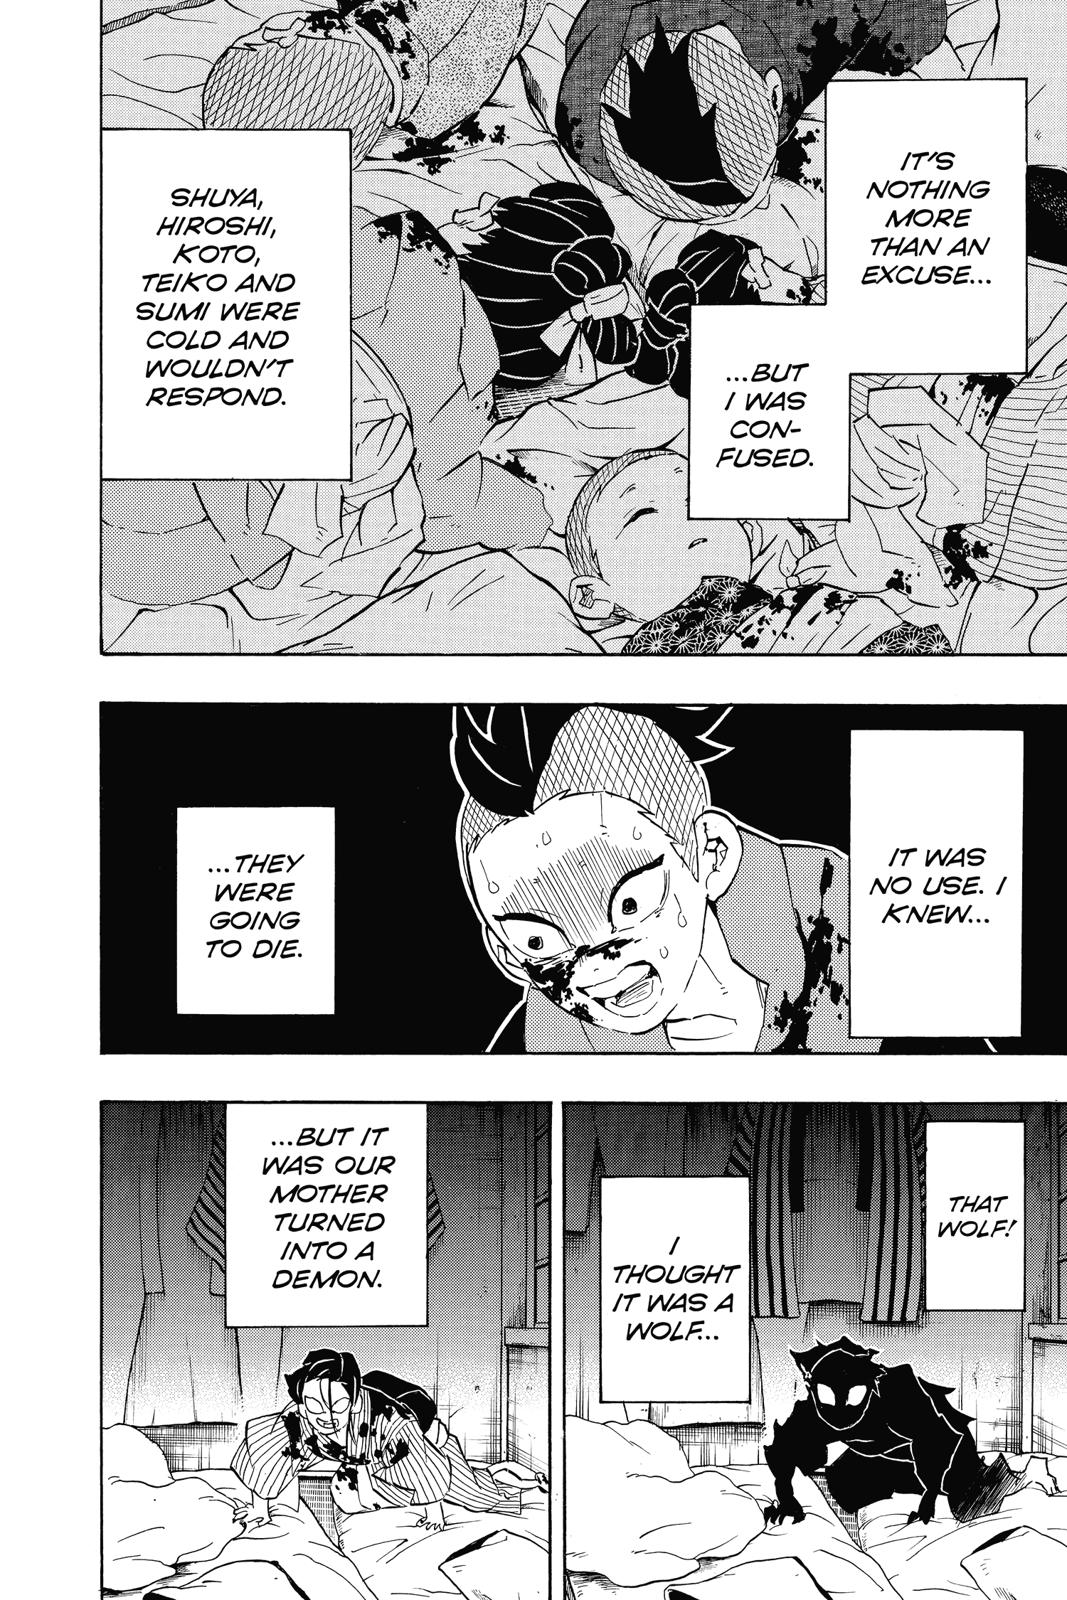 Demon Slayer Manga Manga Chapter - 115 - image 8